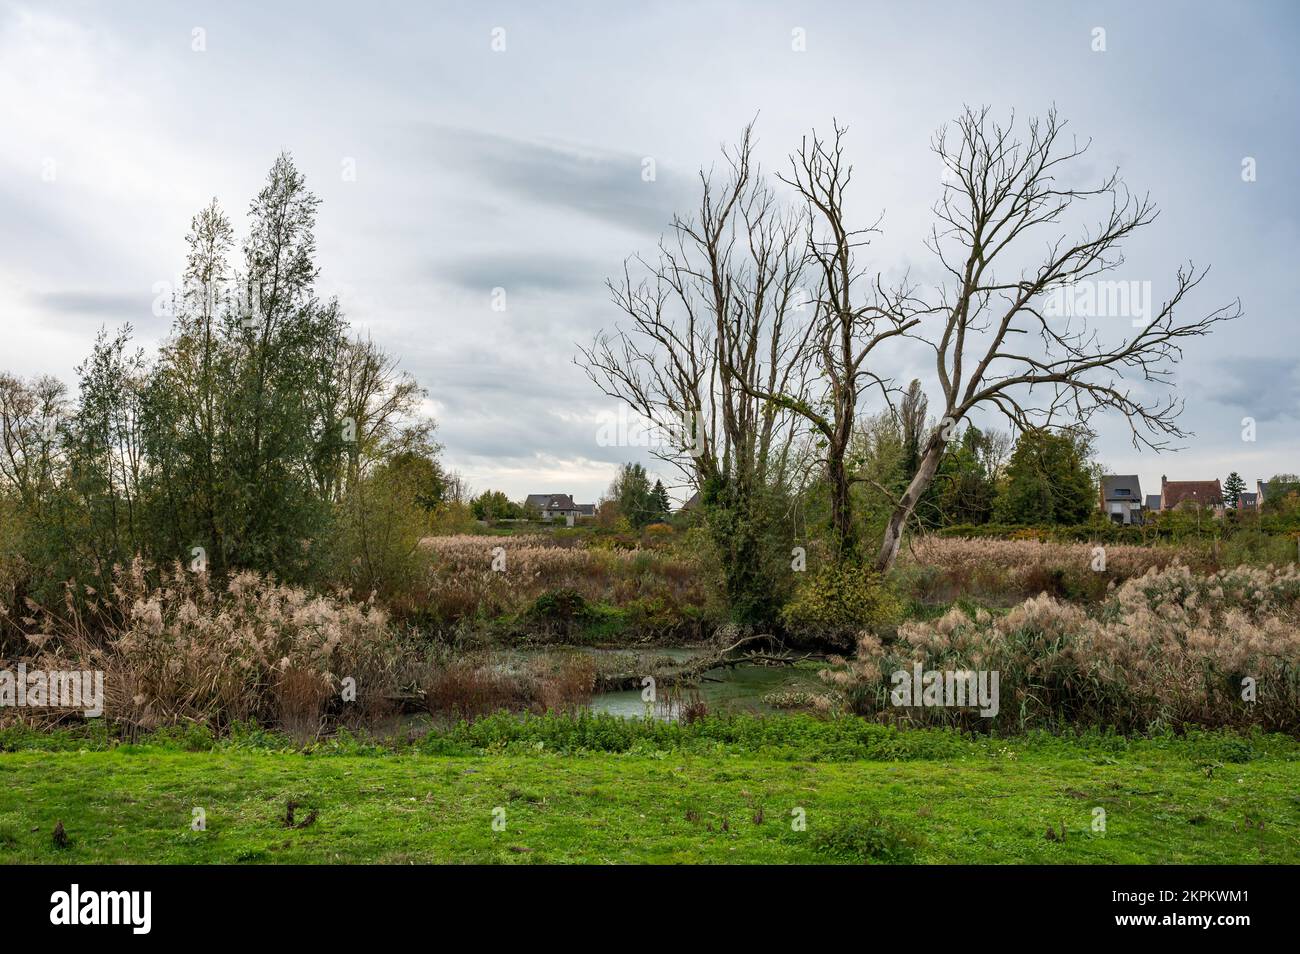 Riserva naturale con alberi autunnali nudi, vegetazione selvaggia ed erba, Berlare, Fiandre, Belgio Foto Stock